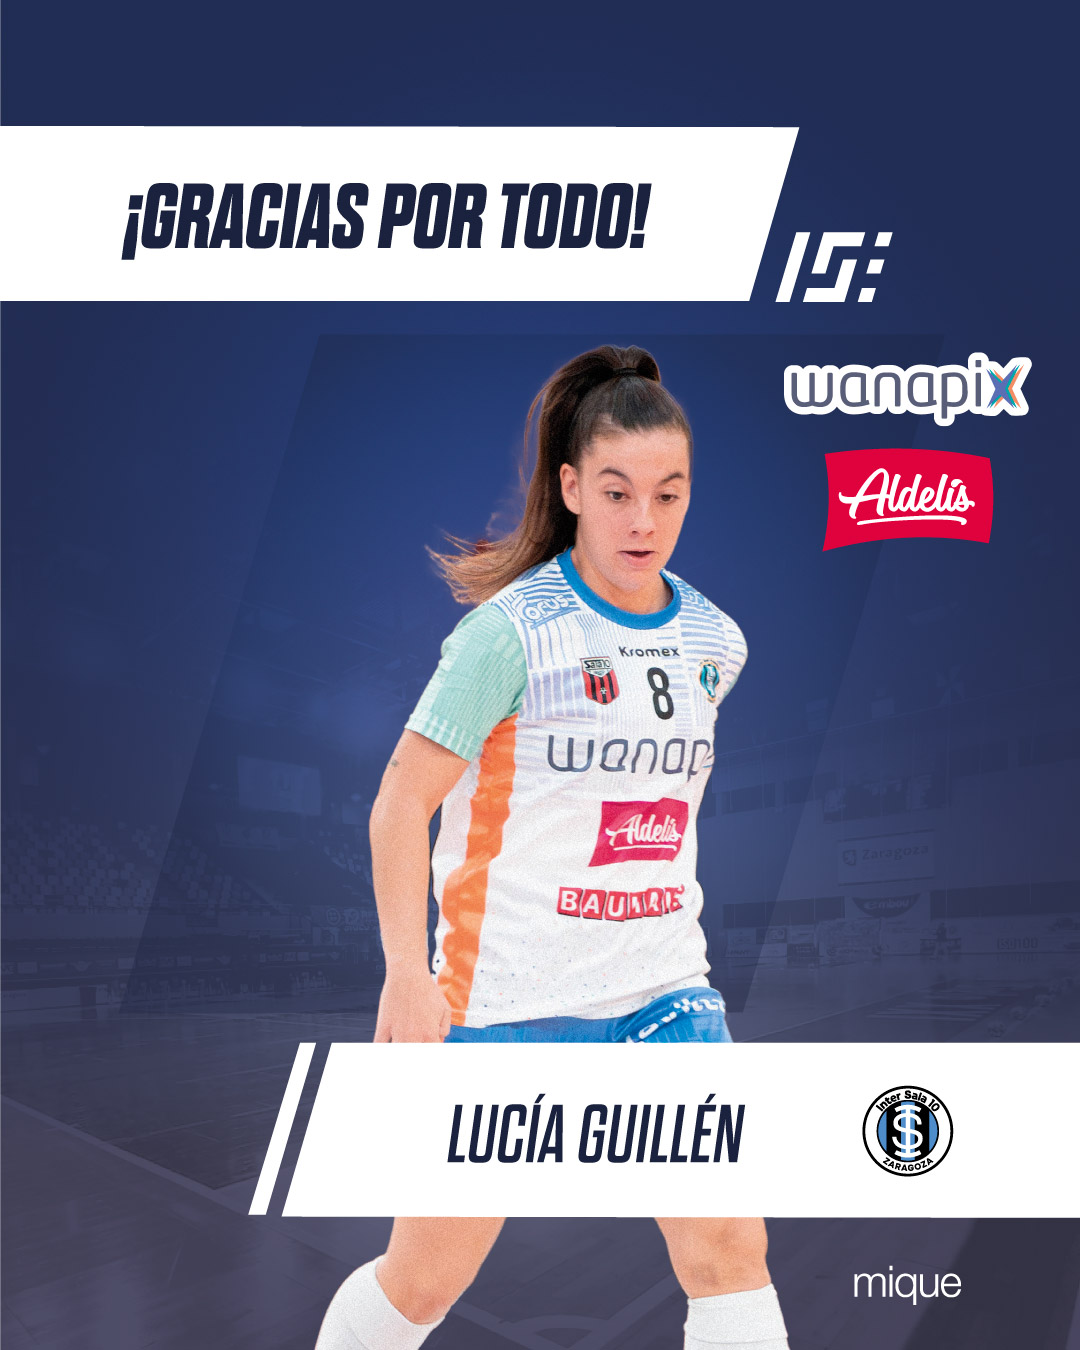 Lucía Guillén no seguirá en Wanapix Aldelís InterSala10 la temporada 24-25